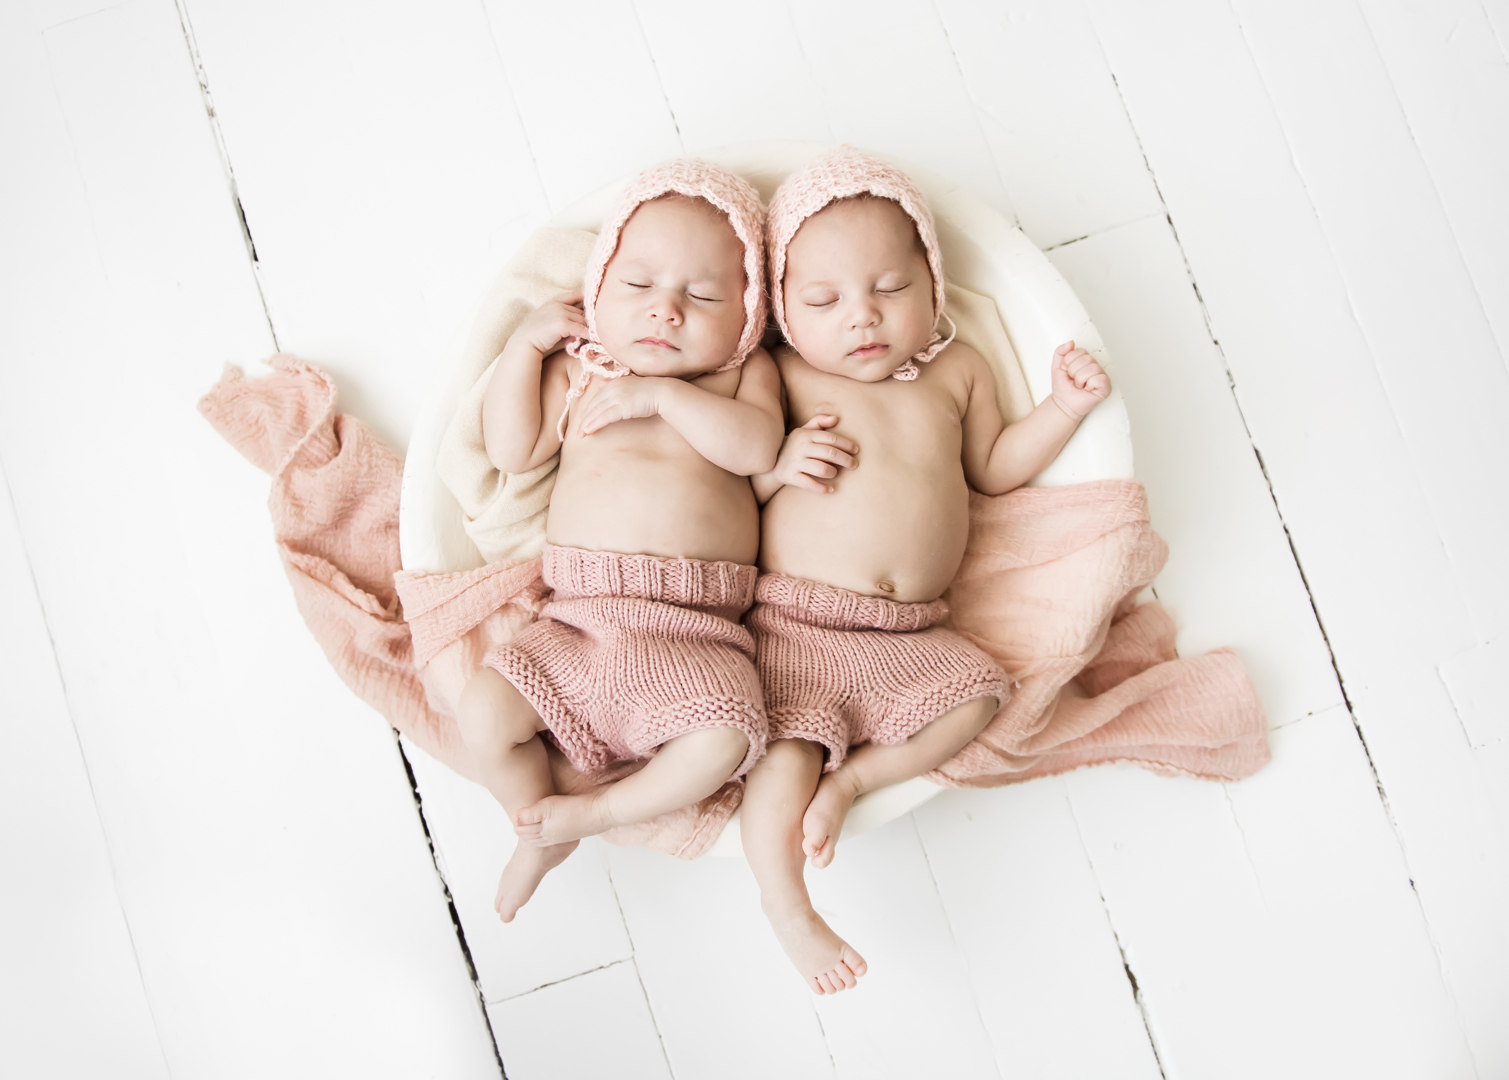 Ny oppdagelse om eneggede tvillinger